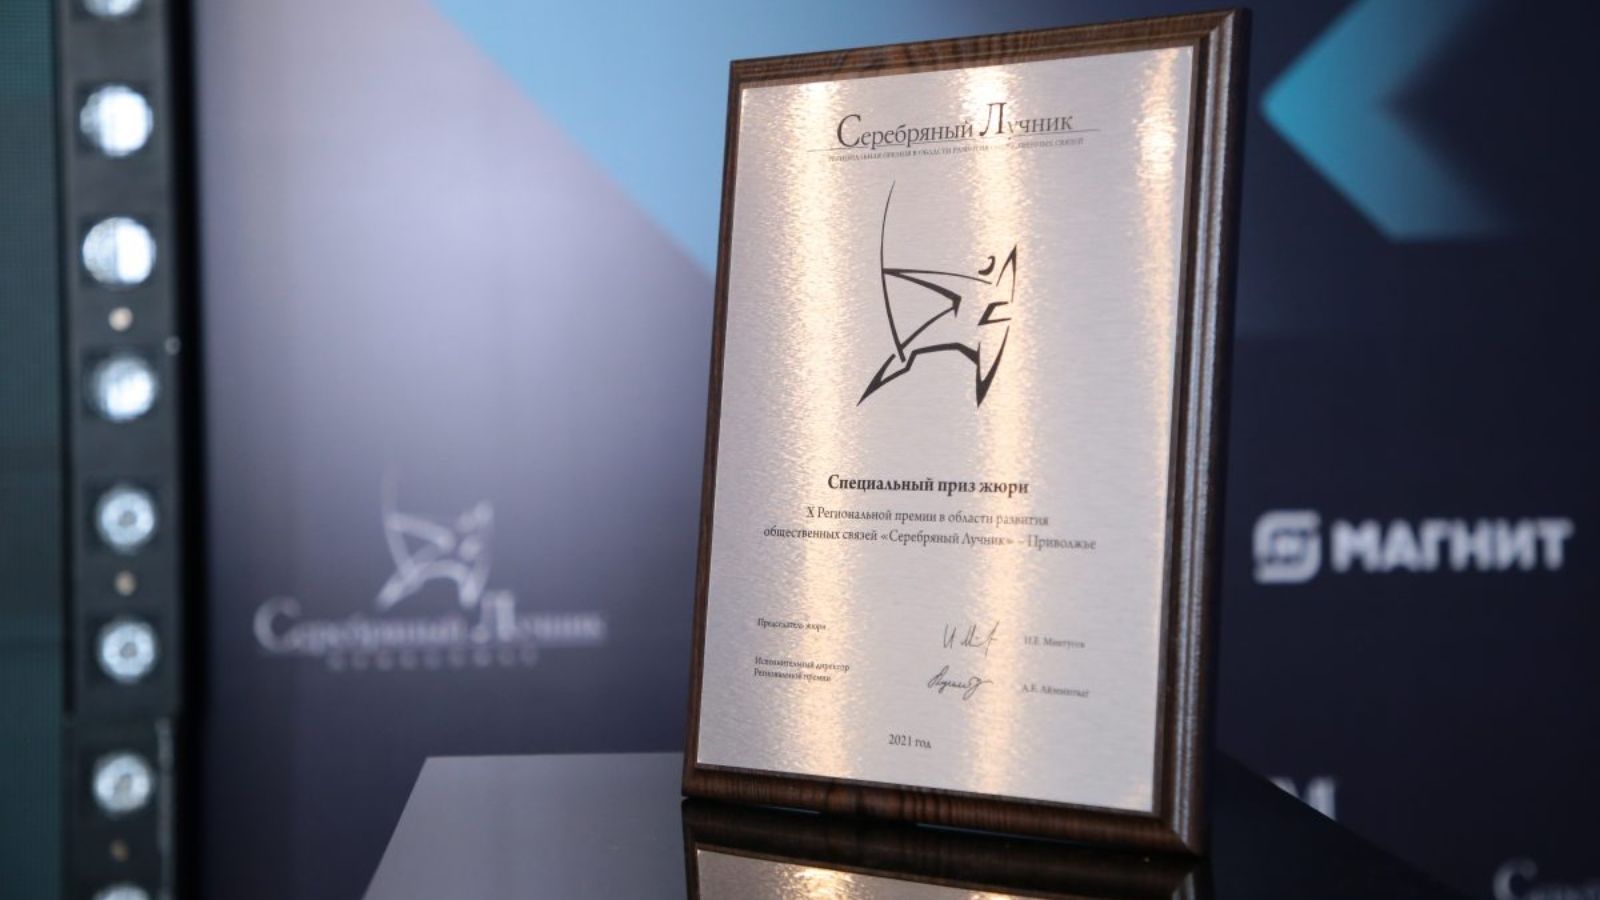 Портал Yardam.ru стал лауреатом Региональной премии «Серебряный лучник»